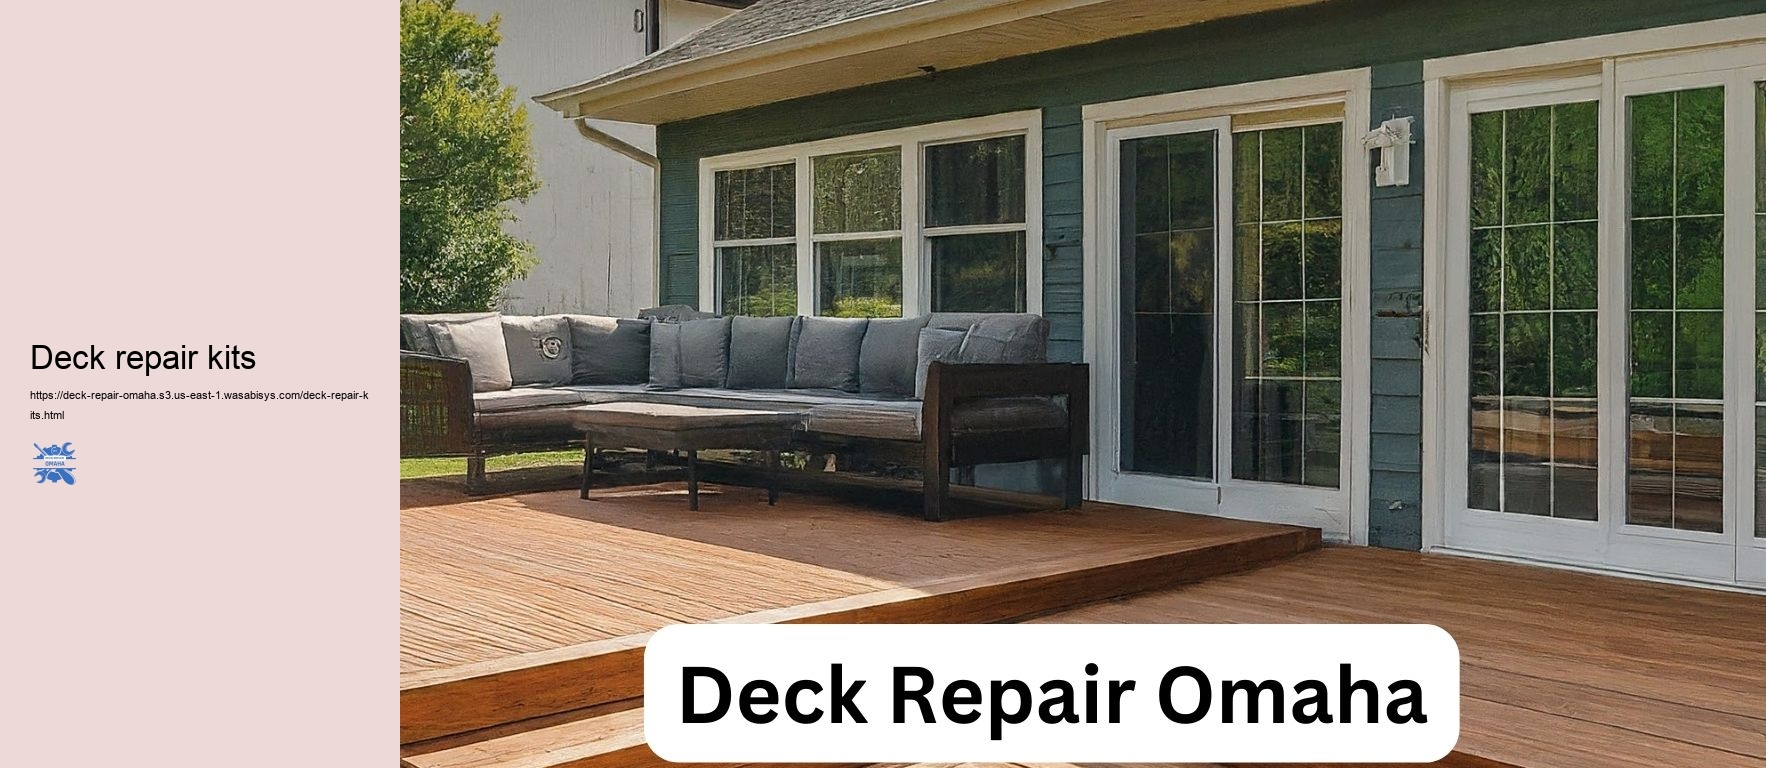 Deck repair kits